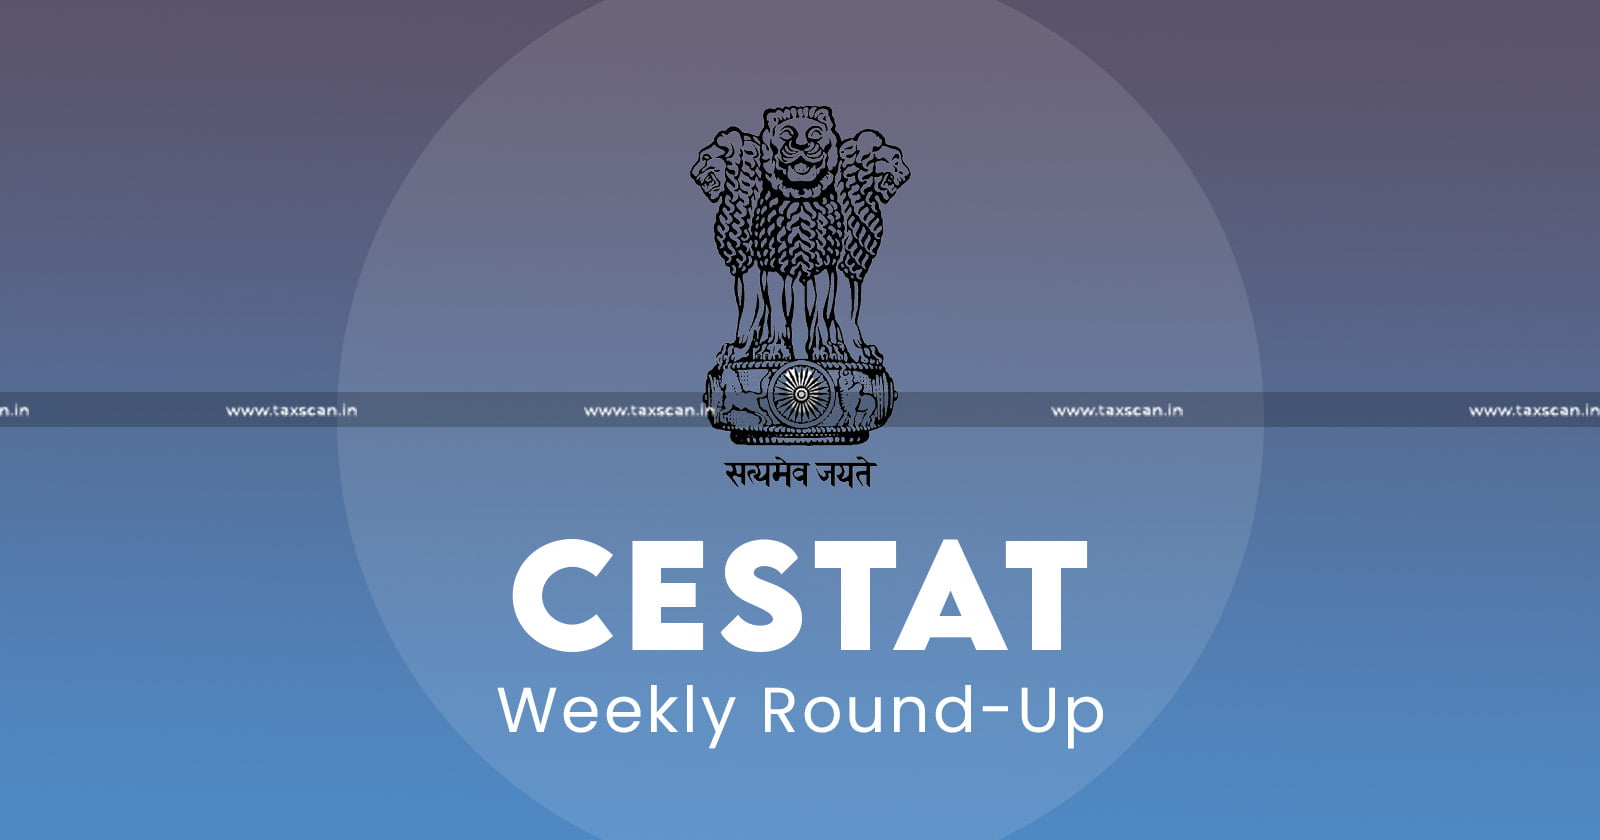 CESTAT - Weekly Round Up - CESTAT Weekly Round Up - taxscan